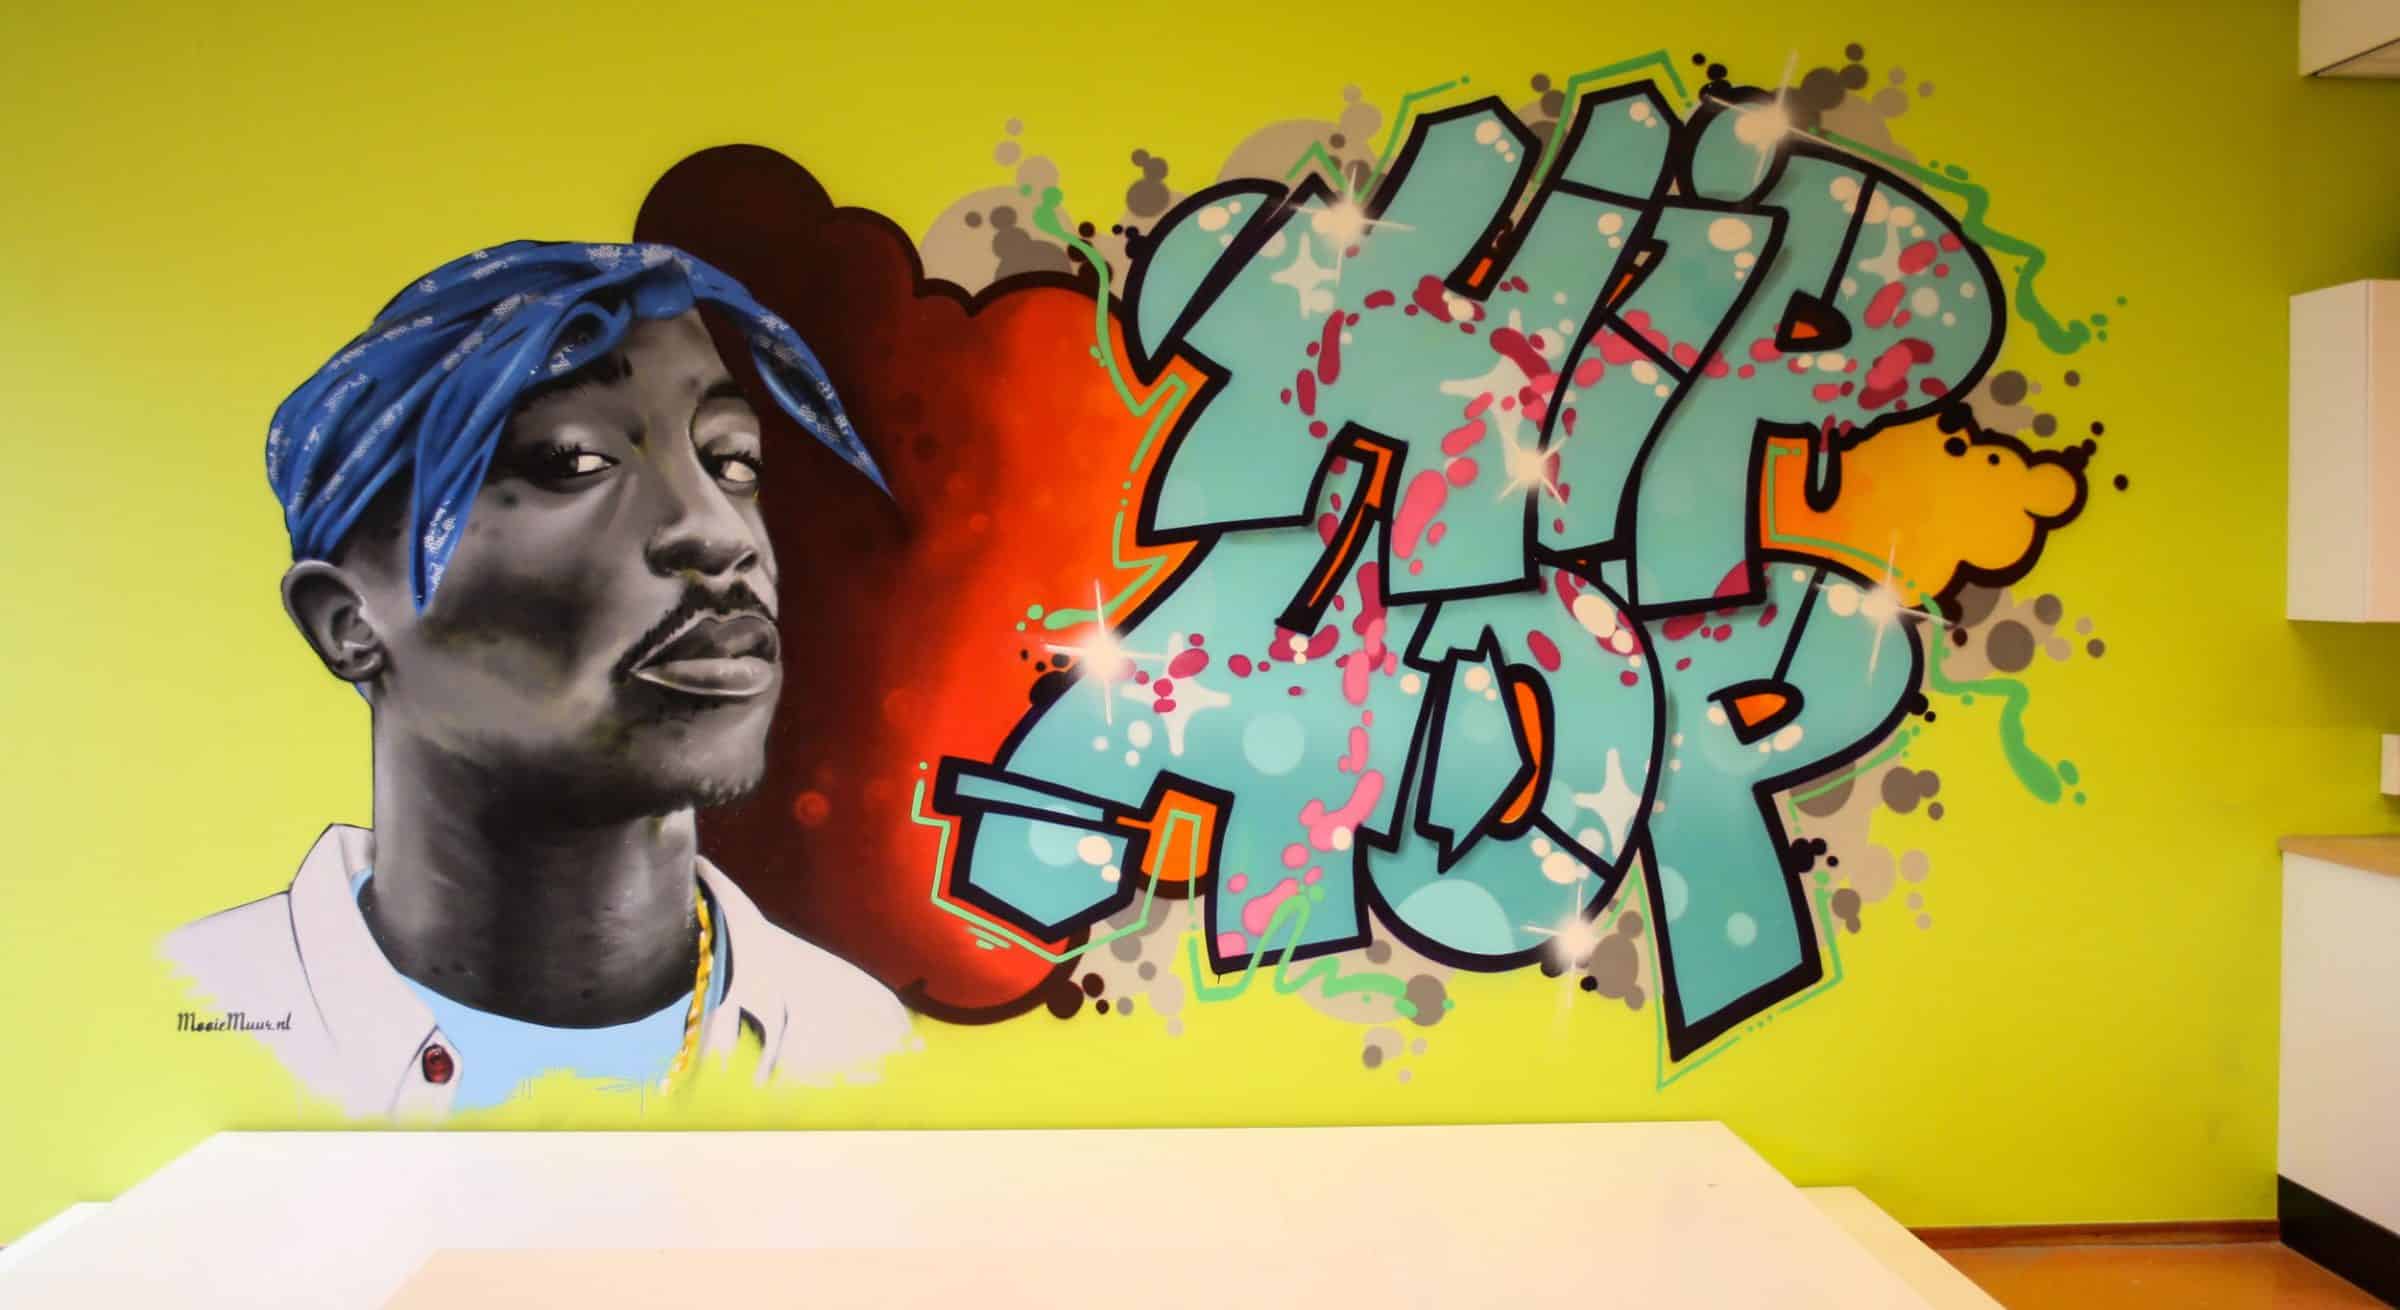 Muurschildering Hip hop